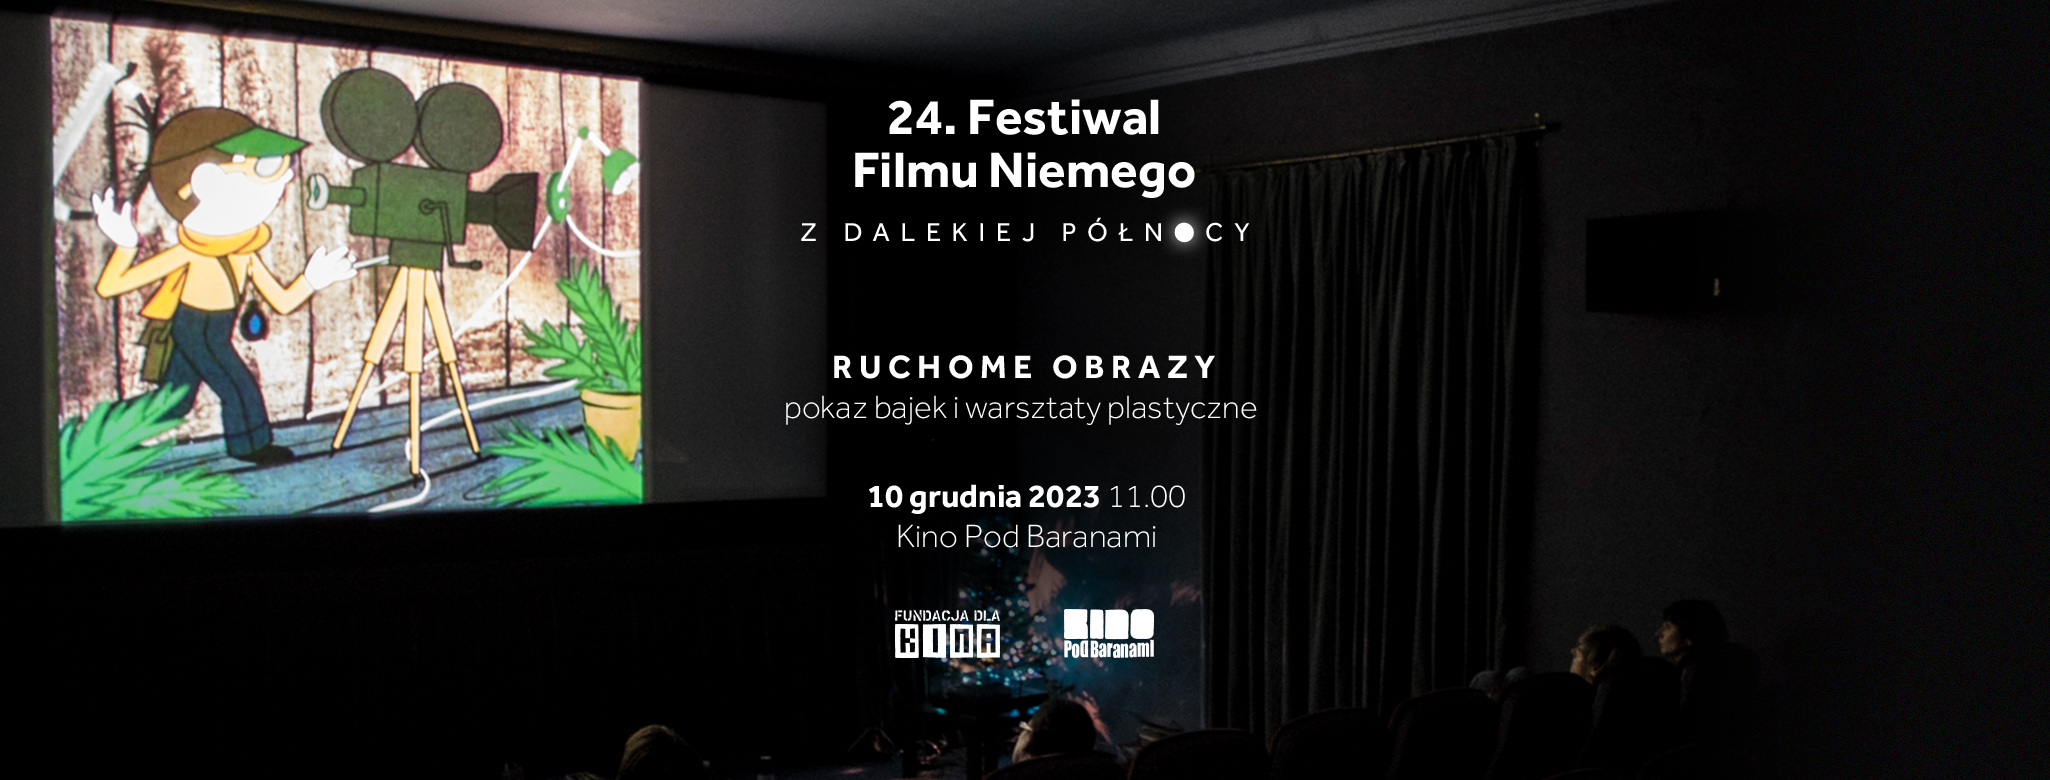 24. Festiwal Filmu Niemego! Ruchome obrazy